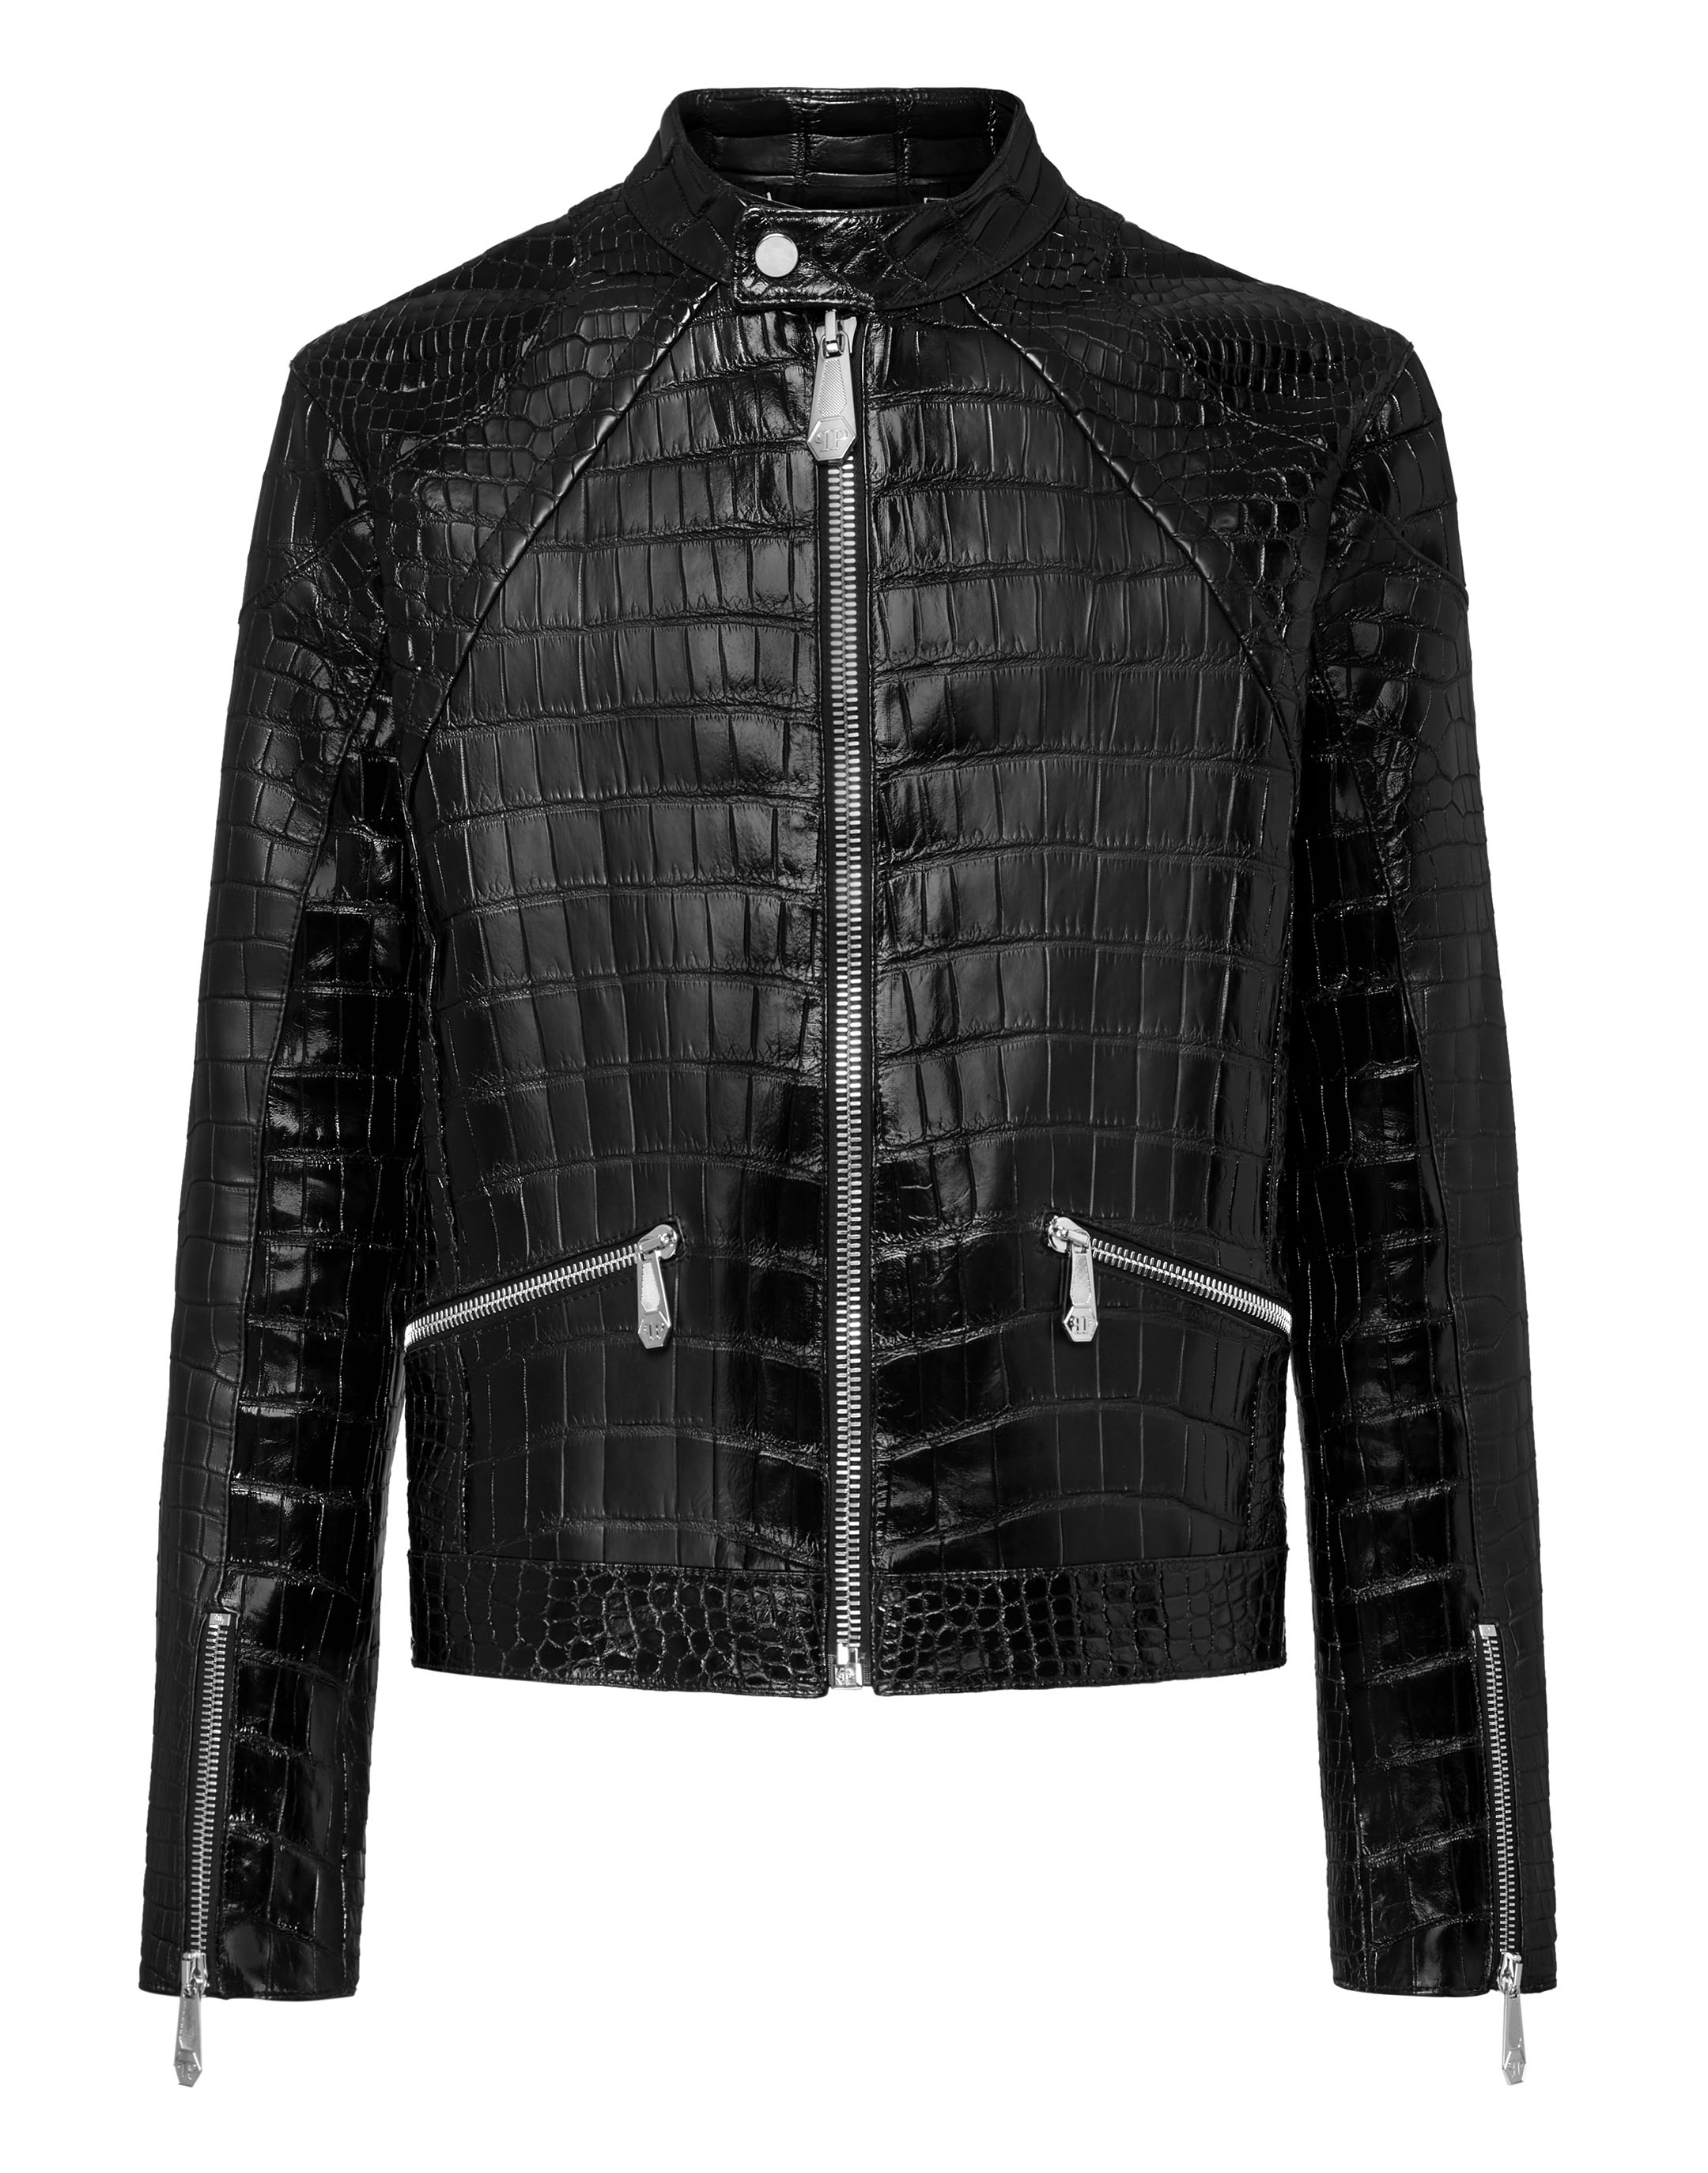 Leather Crocodile Jacket Luxury Philipp Plein